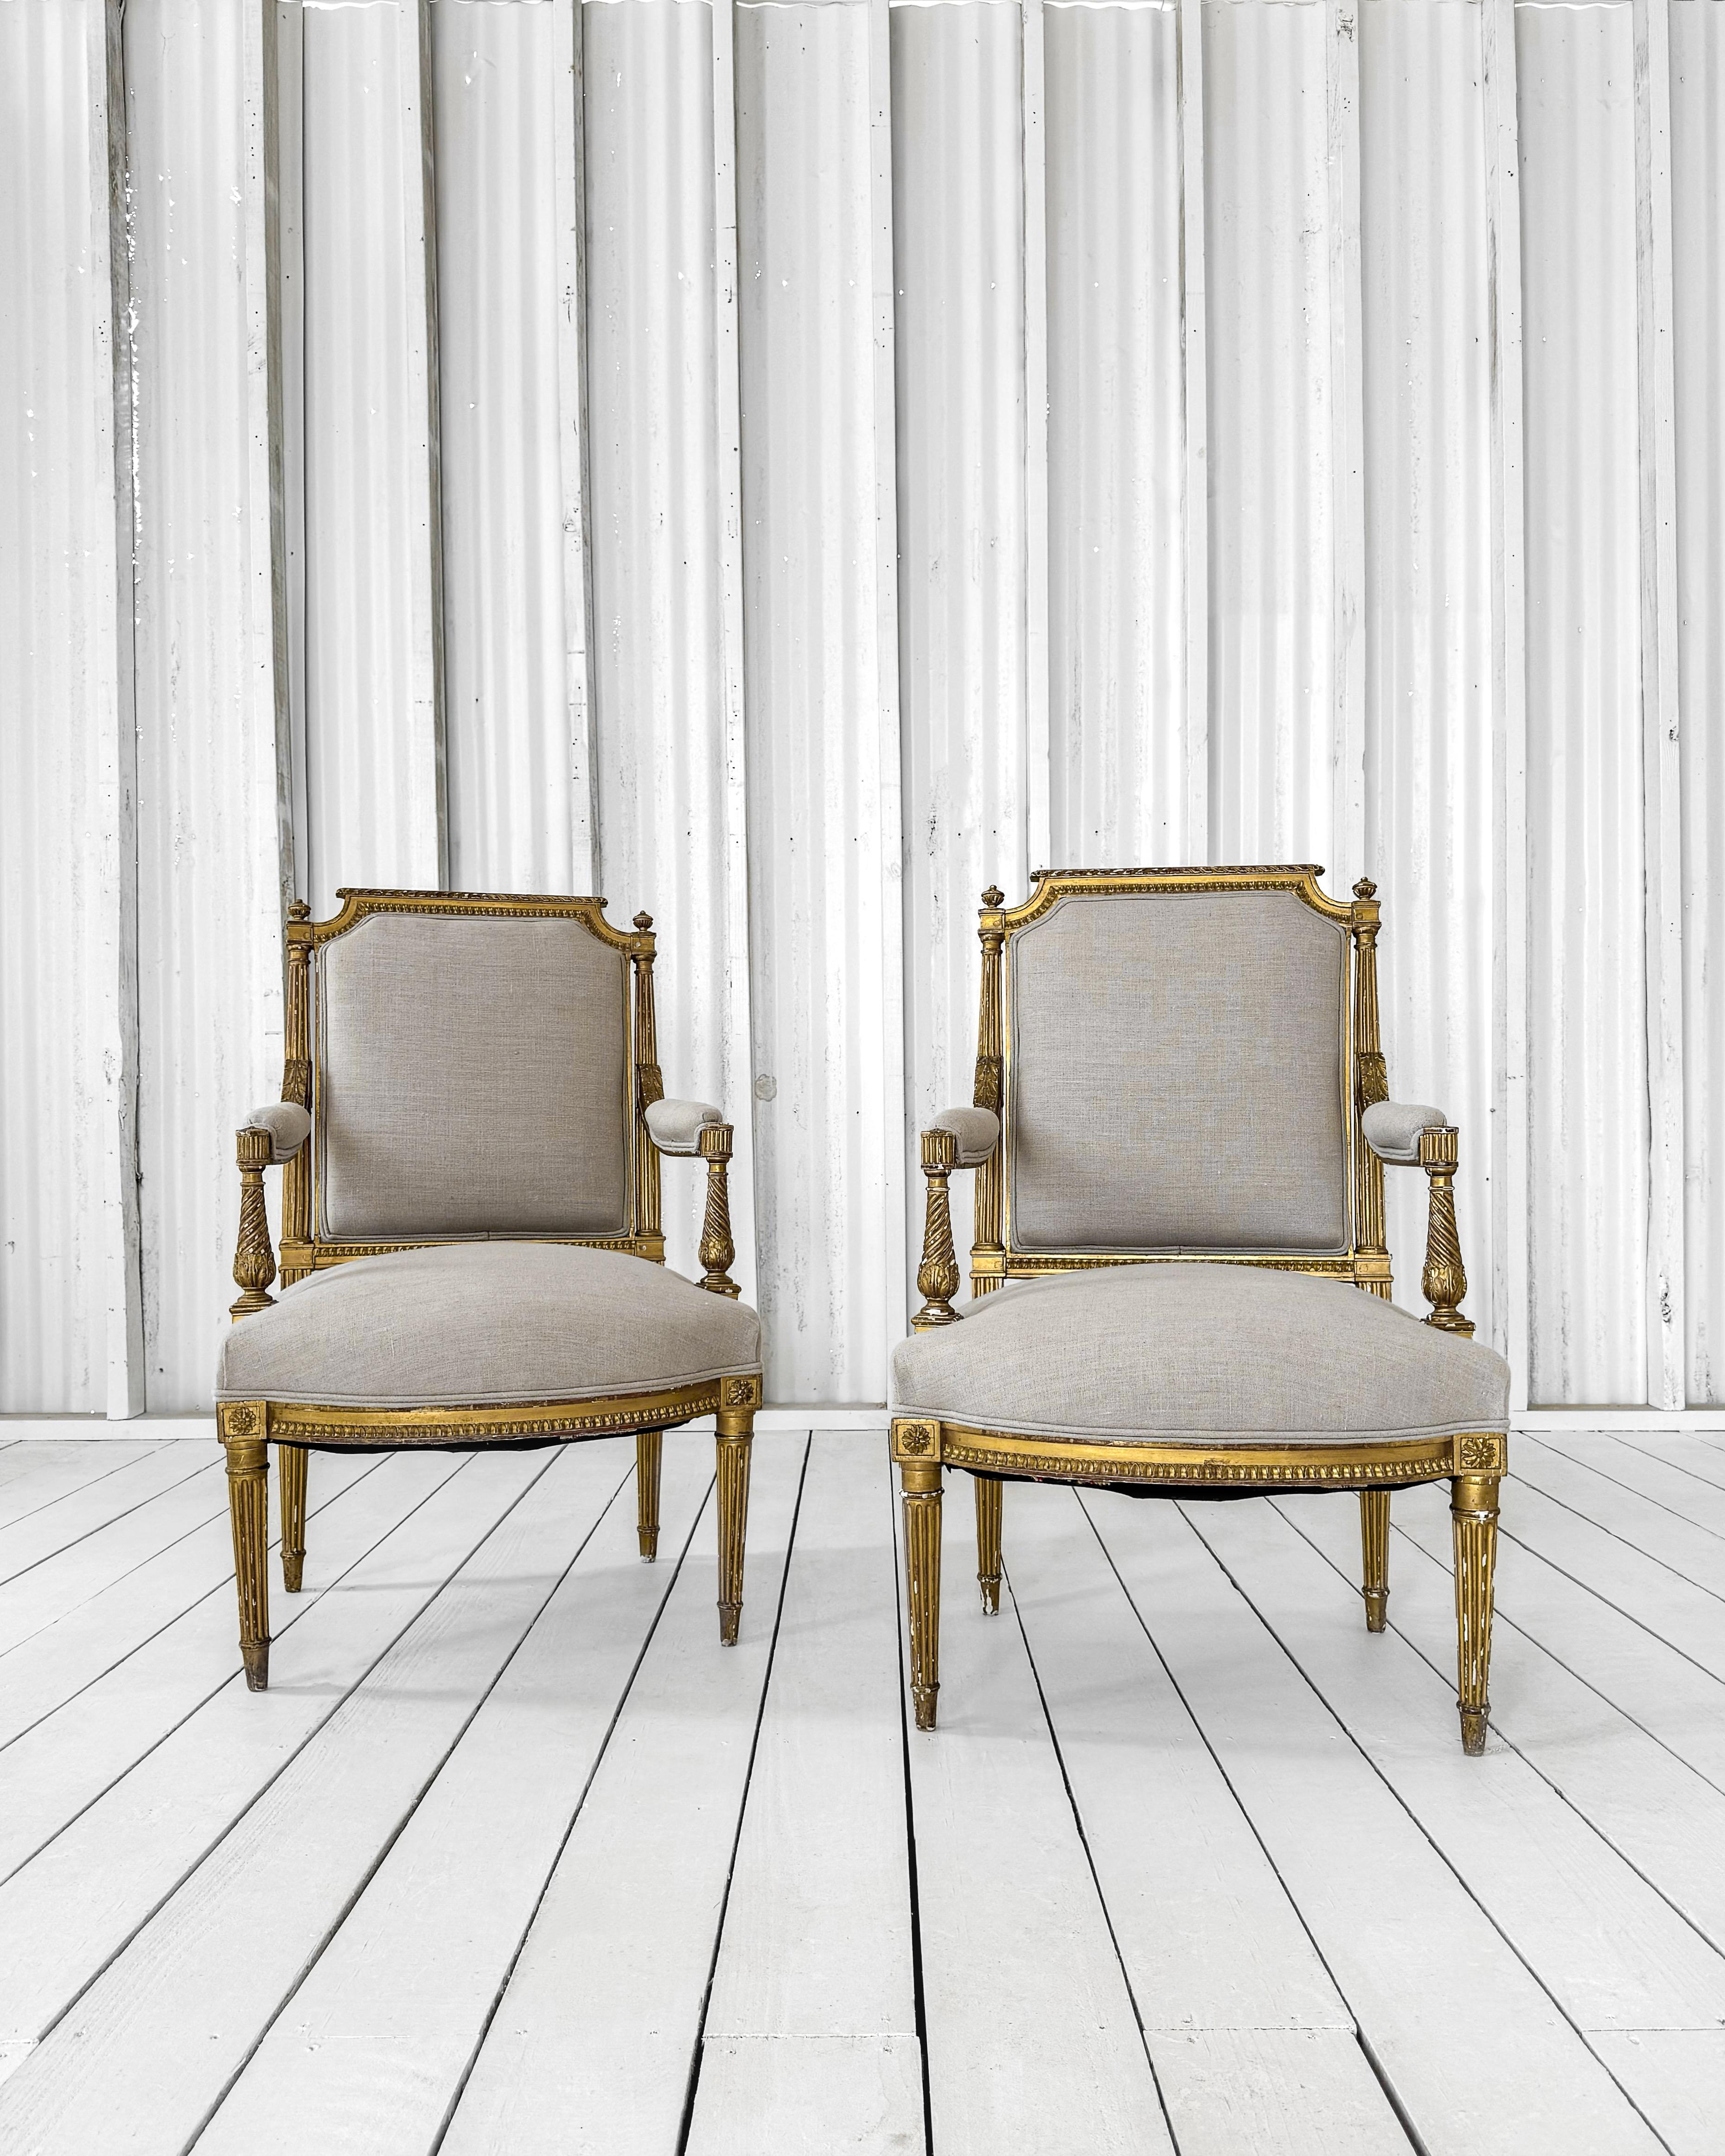 Schöne antike Louis XVI-Fauteuil-Sessel mit handgeformtem Rahmen und quadratischer Rückenlehne. Die kannelierte Rückenlehne des Stuhlrahmens ist aus Massivholz in Zapfenschneidertechnik gefertigt und mit kunstvollen Details entlang des Kammes und